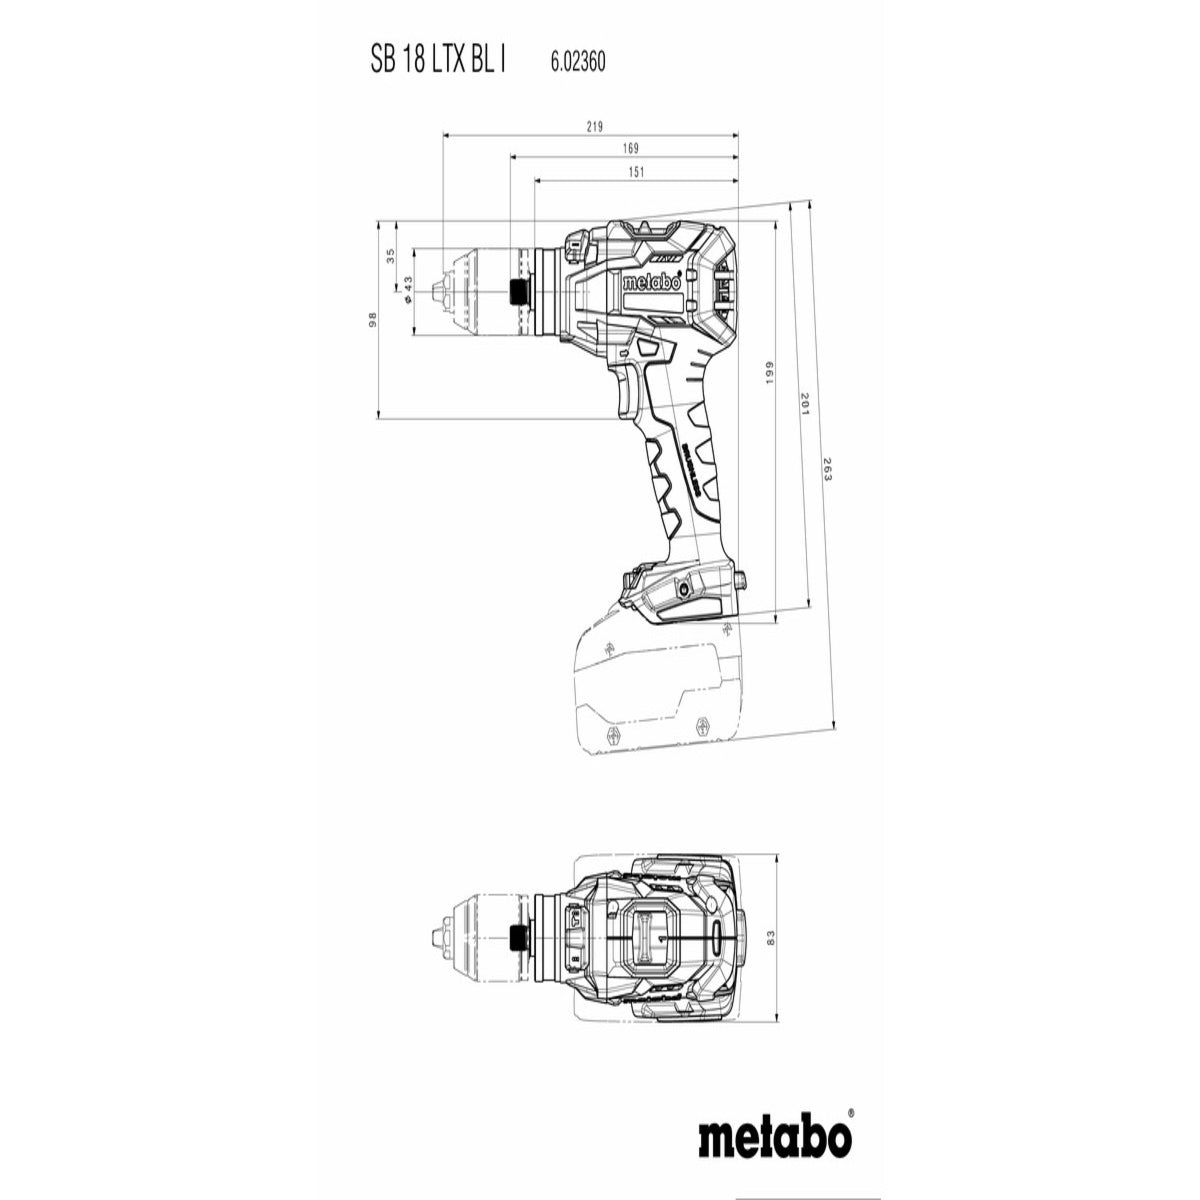 Metabo SB18LTXBLI 18V Brushless Combi Hammer Drill with Meta Box 602360840